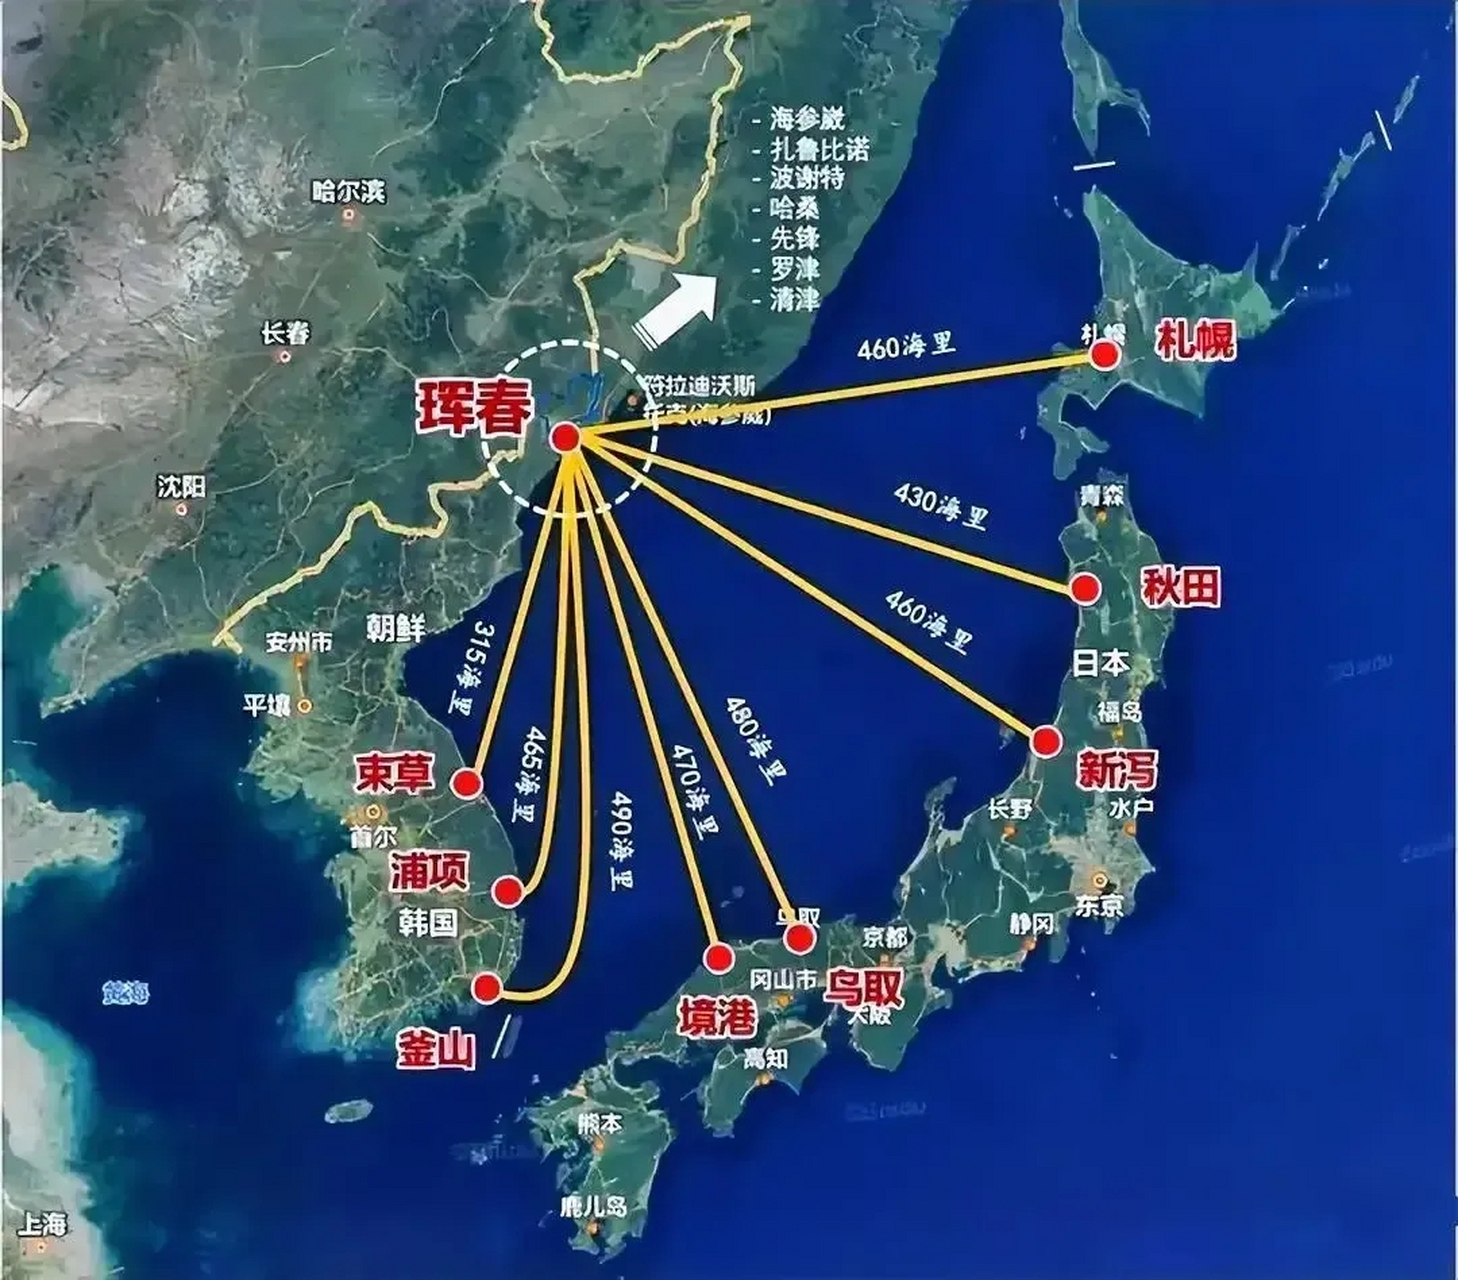 从图片能够看出东北珲春的地理位置还是非常可以的,与韩国,日本